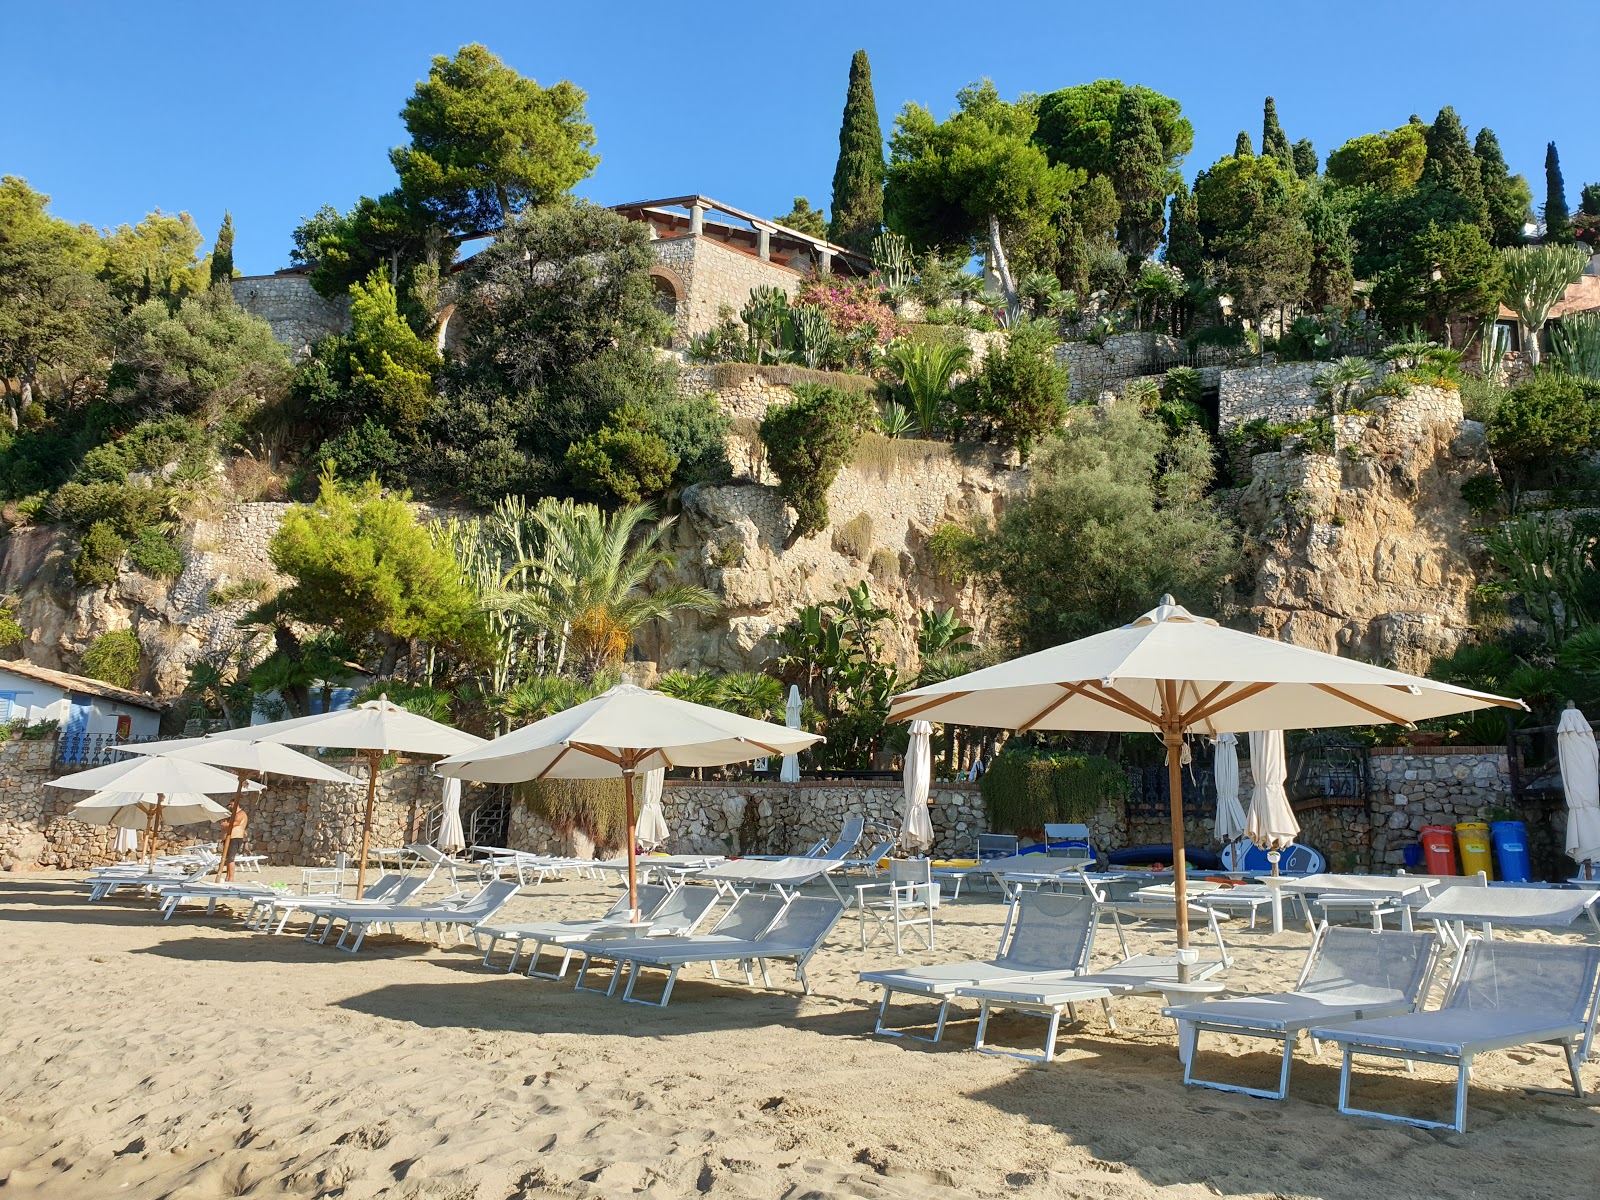 Foto de Spiaggia dell'Arenauta ubicado en área natural